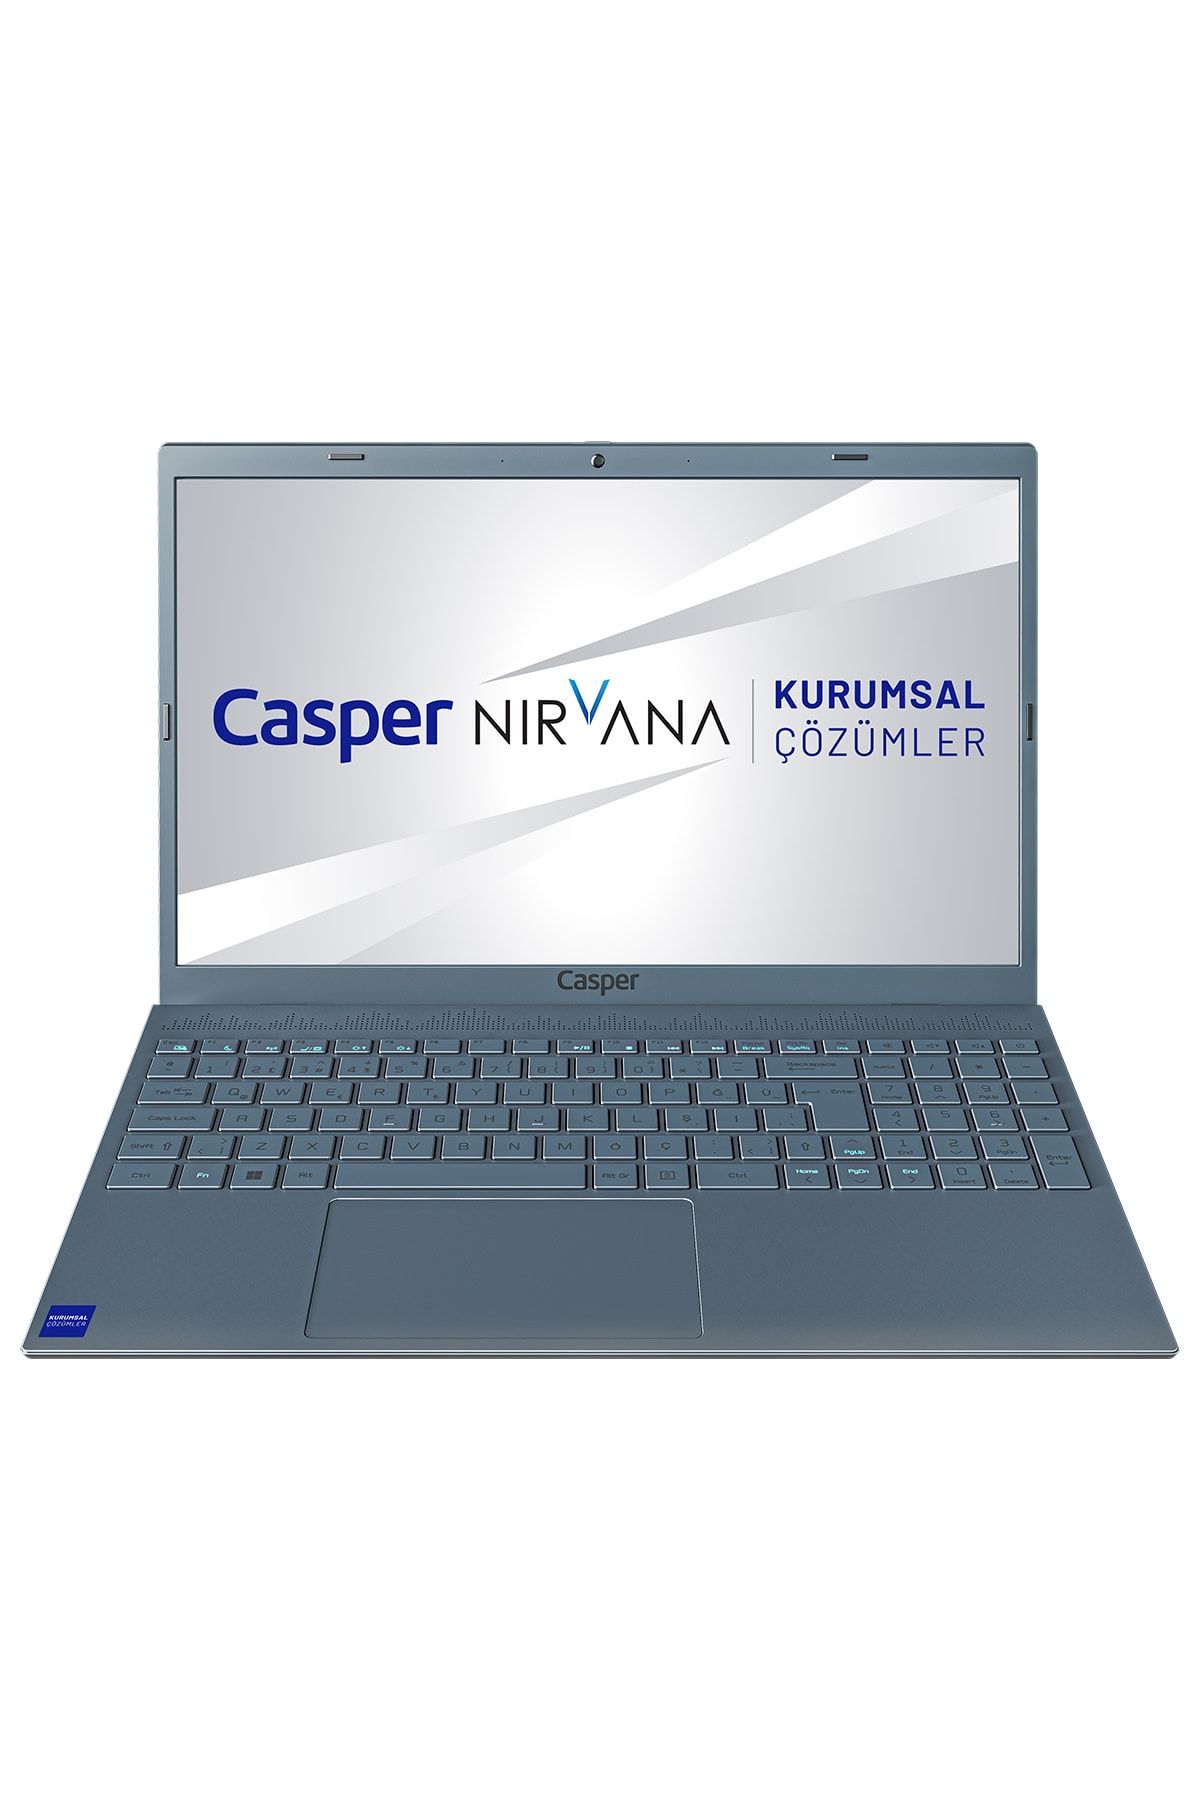 Casper Nirvana C600.1135-8v00x-g-f Intel Core I5-1135g7 8gb Ram 500 Nvme Ssd Freedos